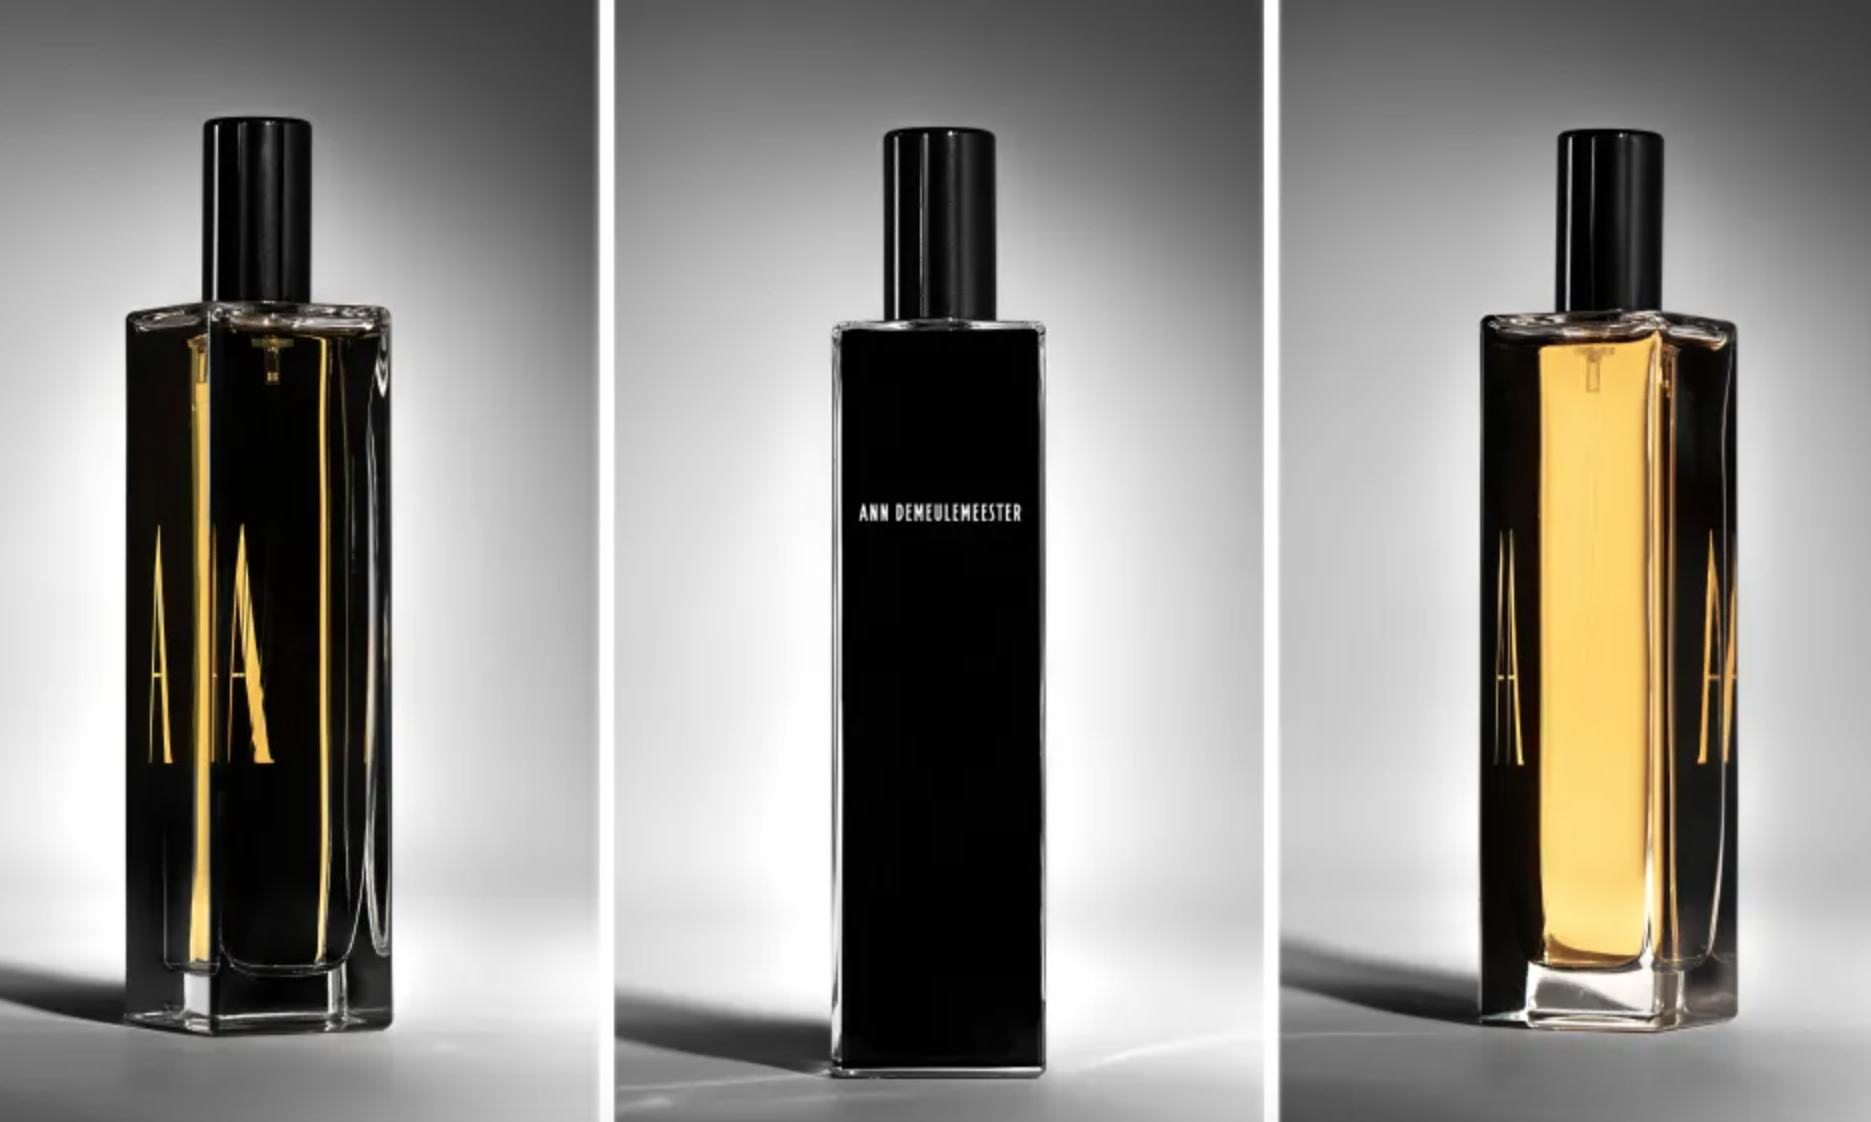 Ann Demeulemeester 推出第一款香水产品